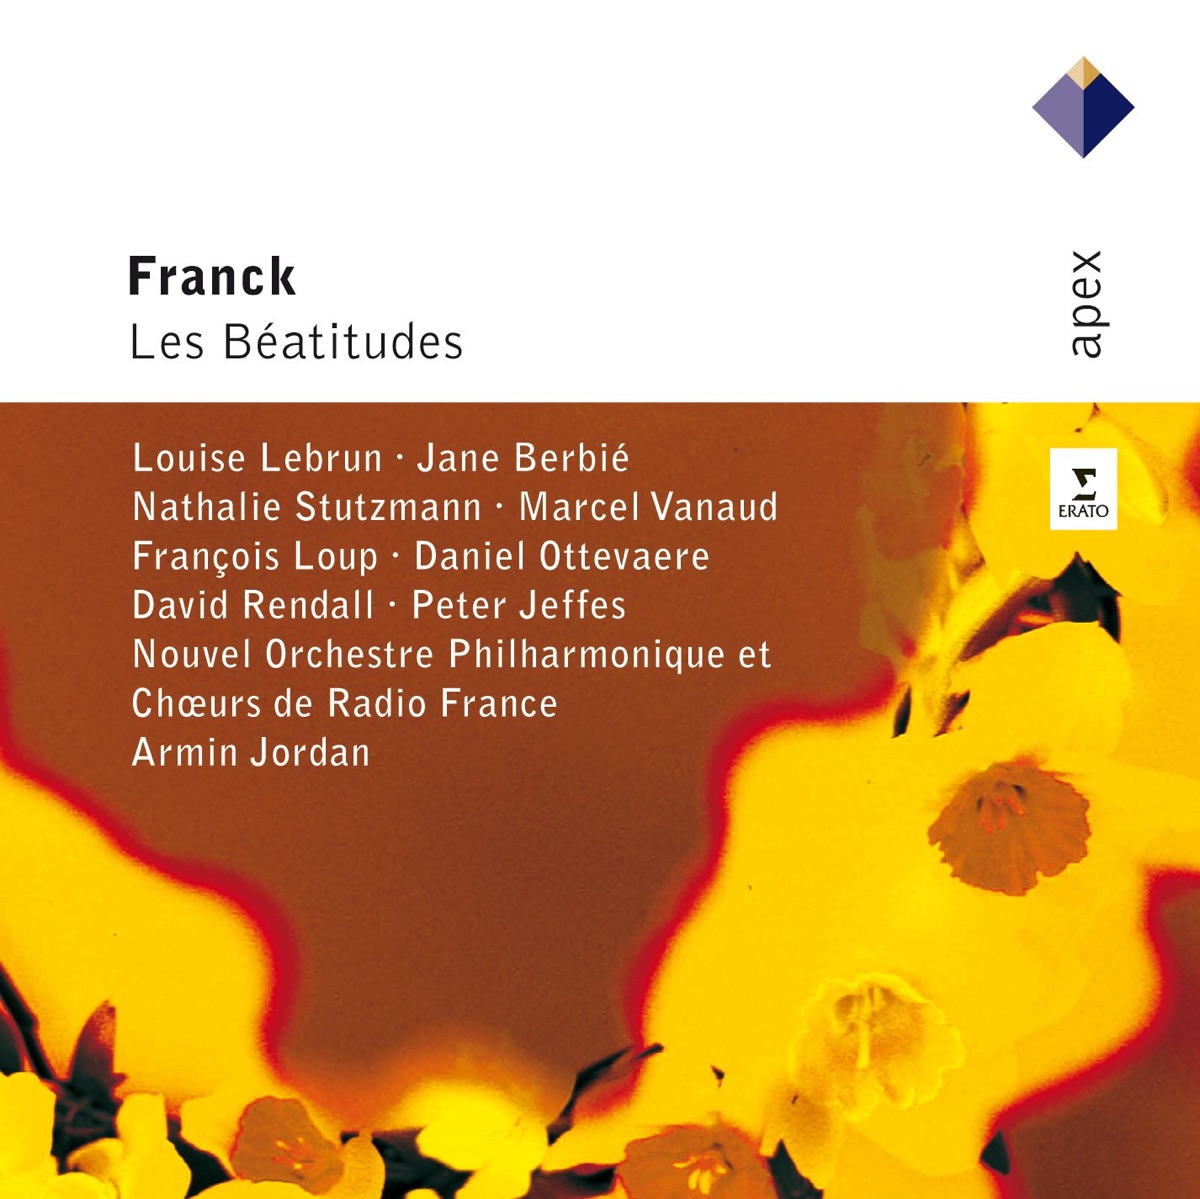 Franck: Les Béatitudes by Armin Jordan, Chœurs de Radio France & Nouvel  Orchestre Philharmonique on Apple Music